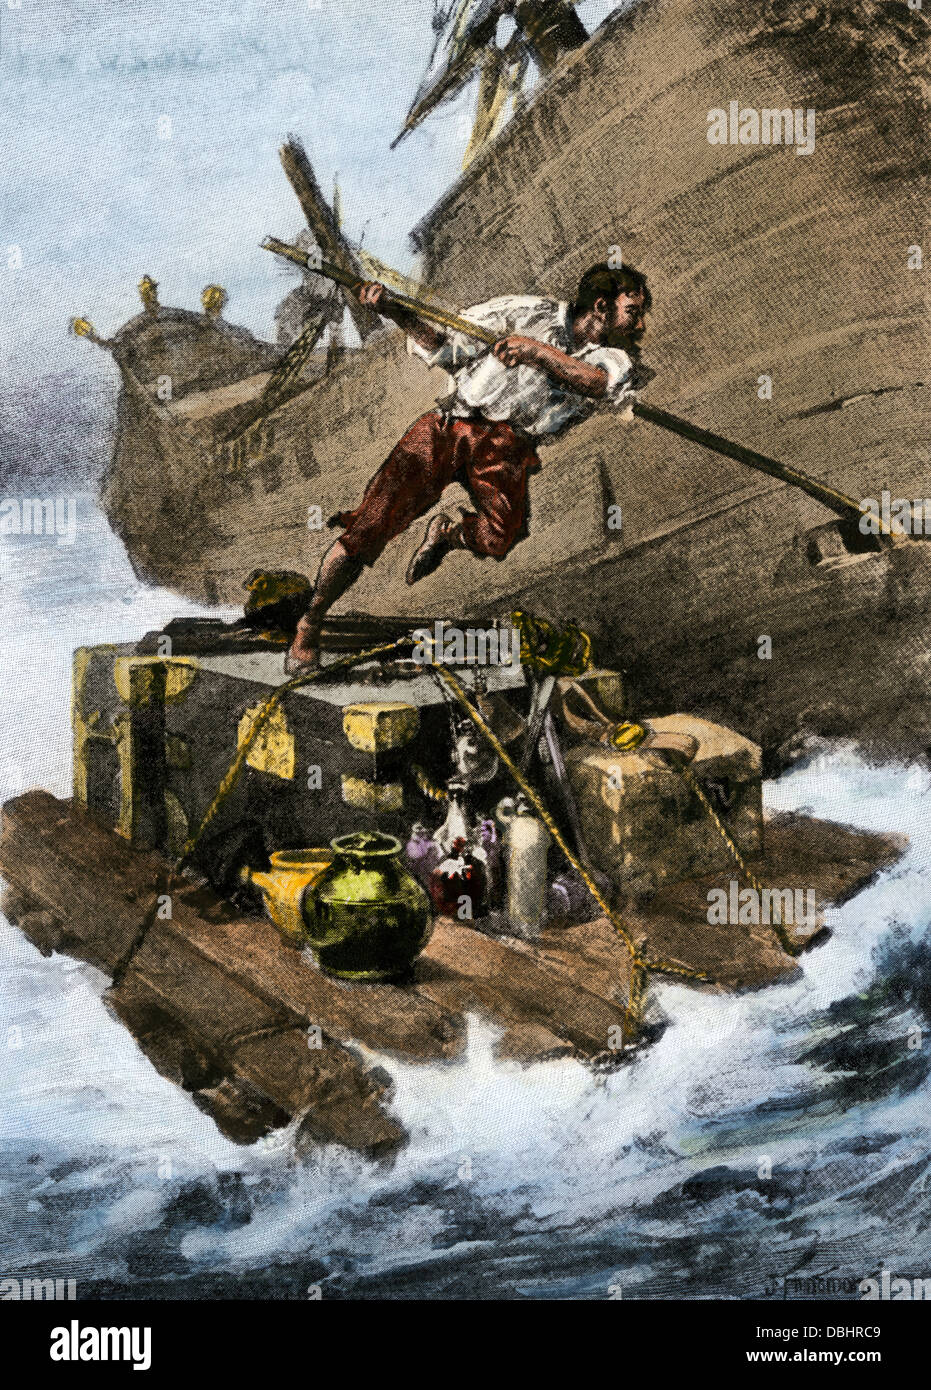 Robinson Crusoe escapar del naufragio, a partir de la novela de Daniel Defoe. Reproducción de semitonos pintado a mano de ilustración. Foto de stock